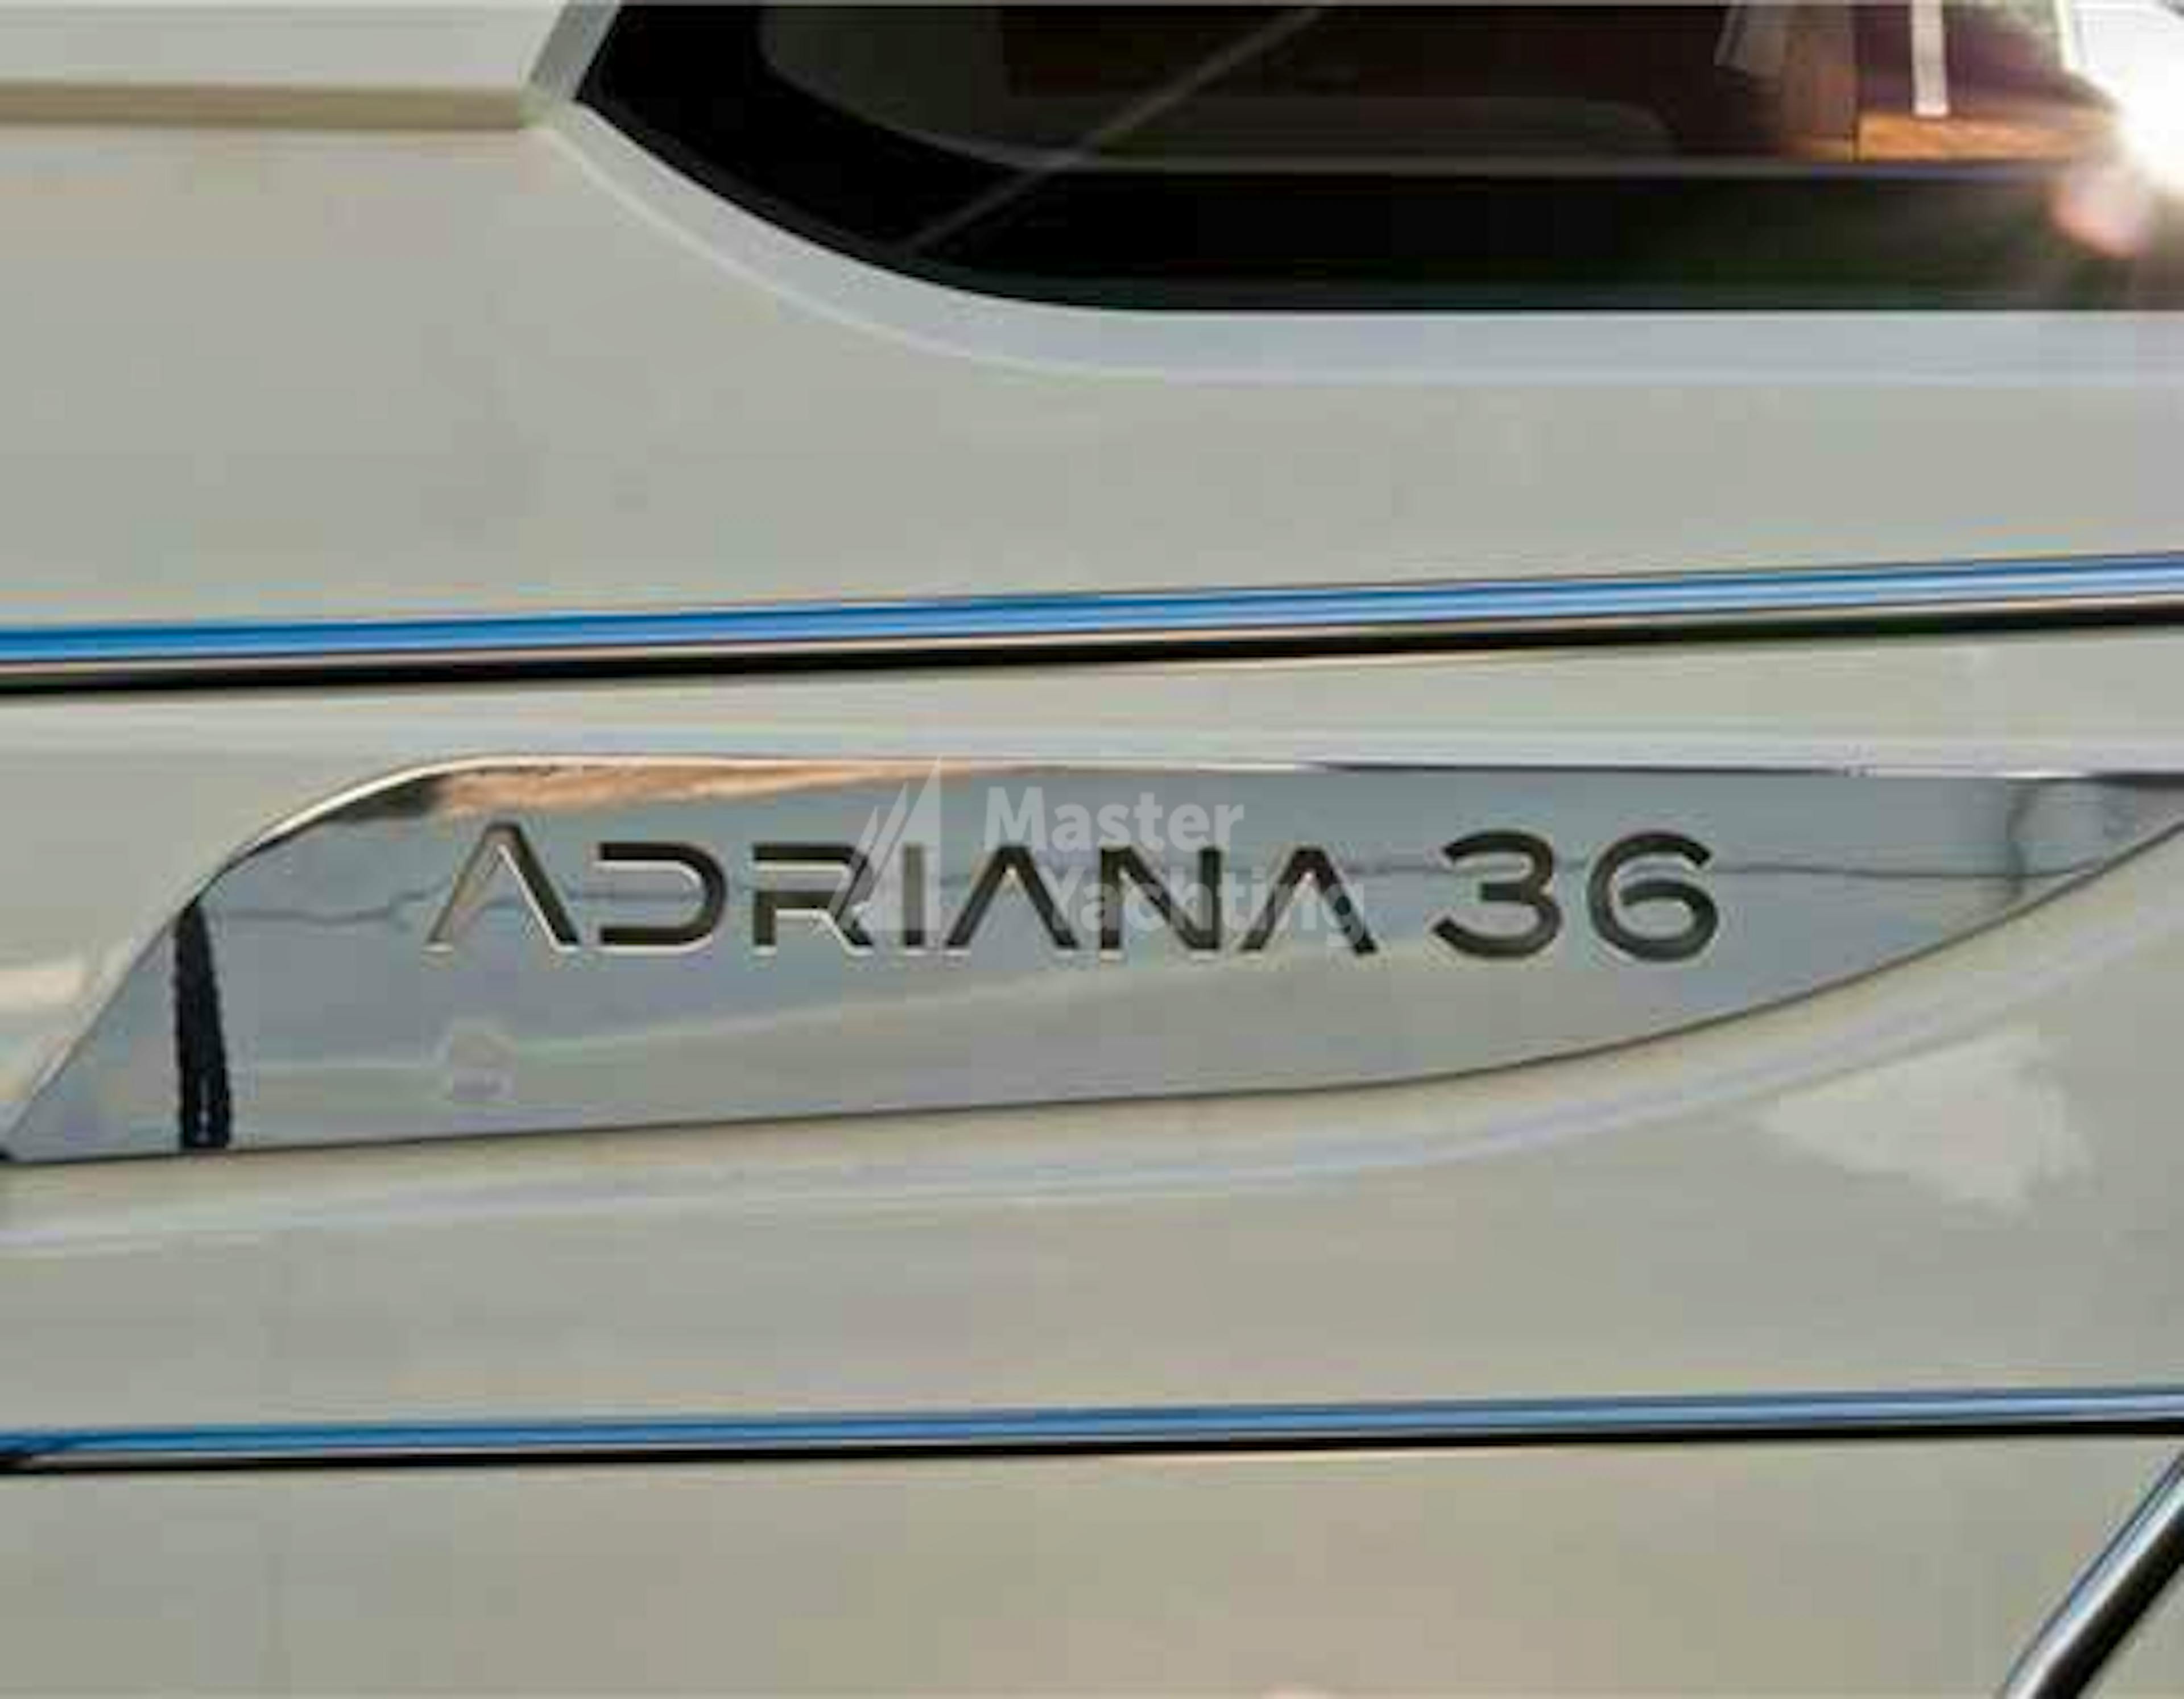 Adriana 36 BT